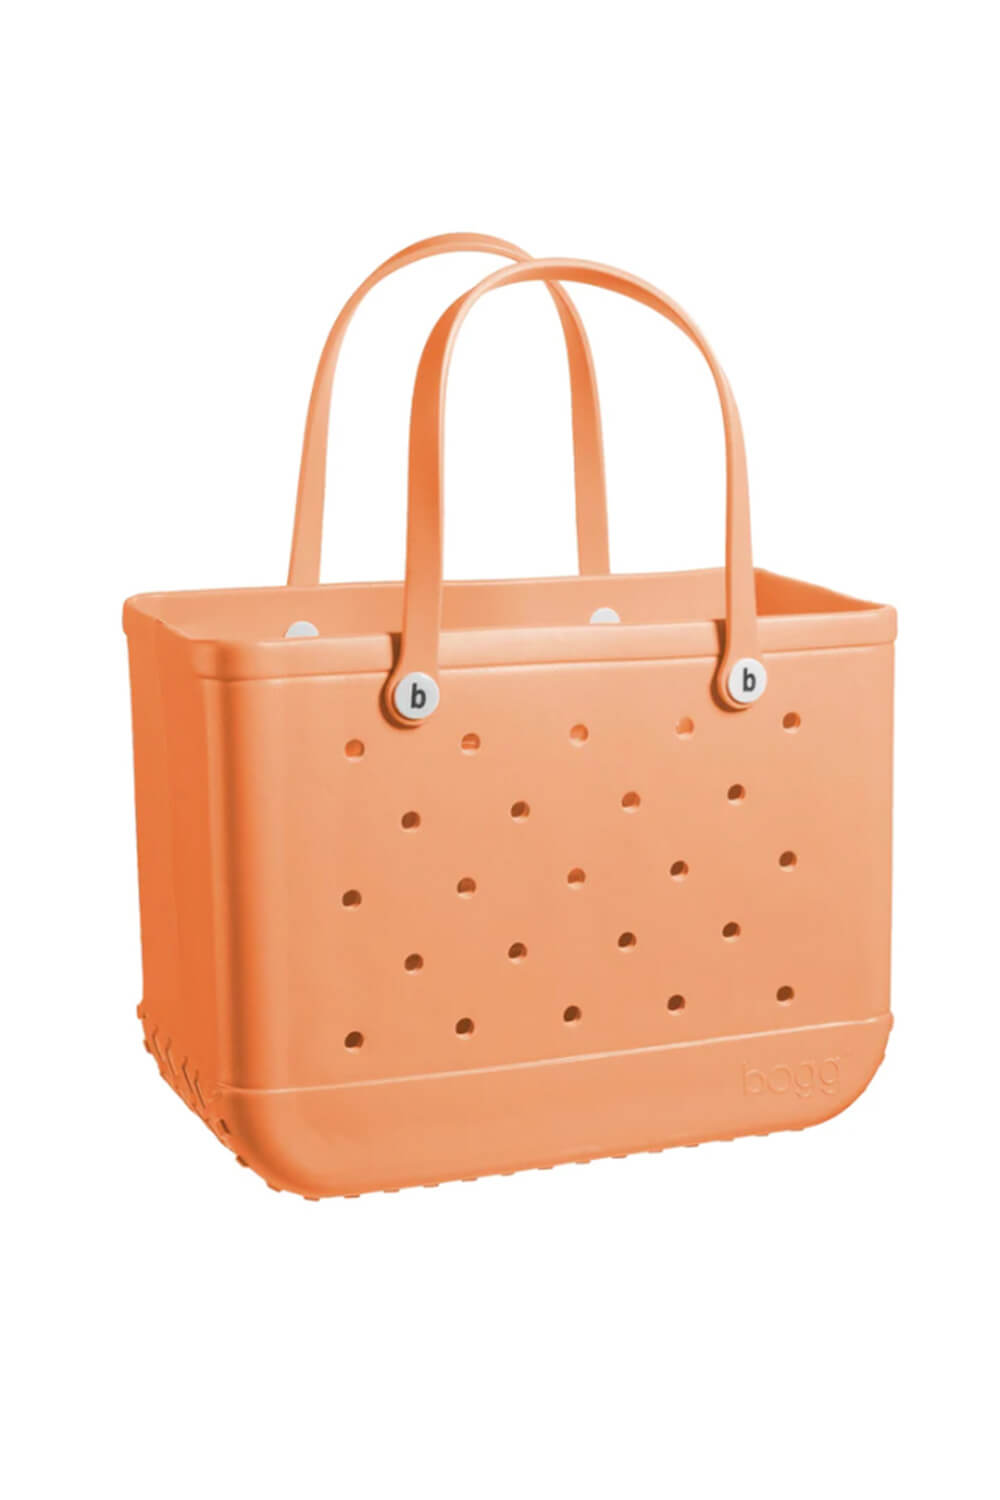 herwinnen vergeetachtig besluiten Bogg Bag Original Large Bogg Bag in Creamsicle Orange | 260B-CREAMSICL –  Glik's